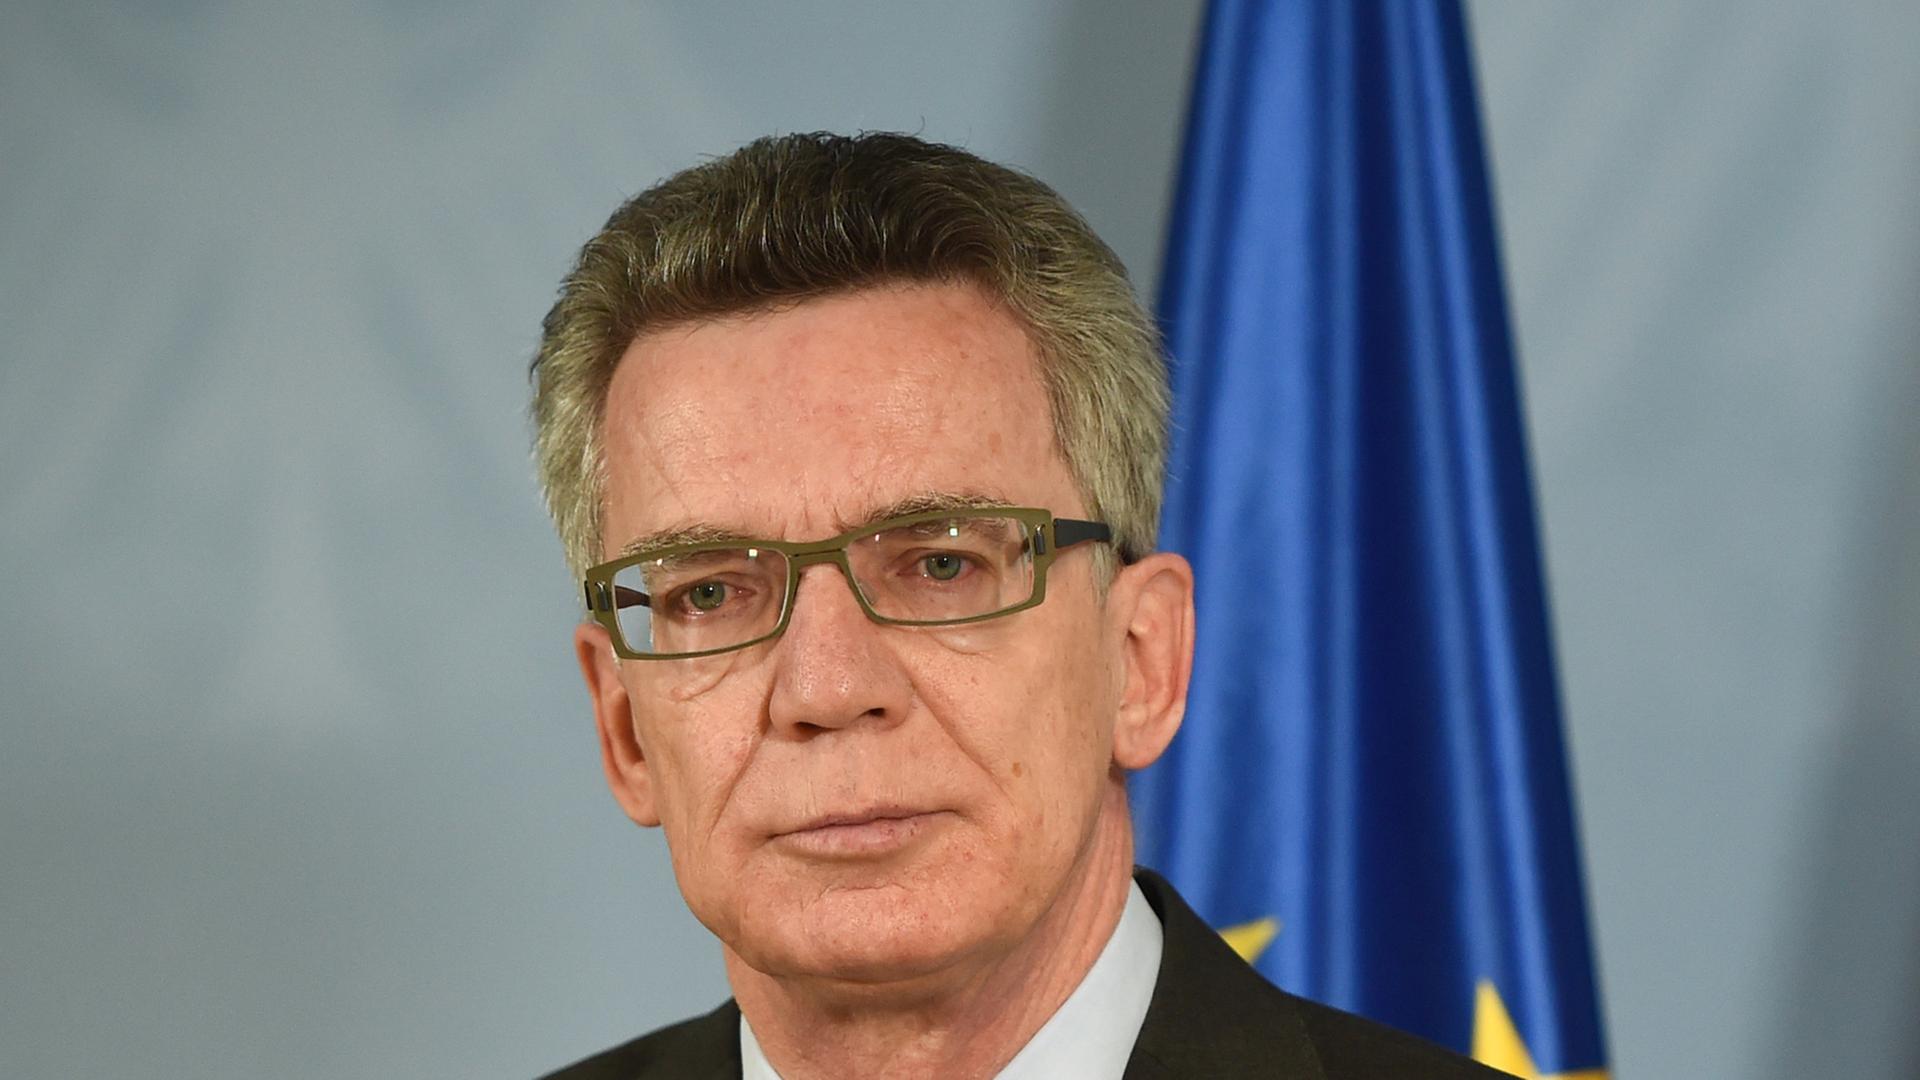 Bundesinnenminister Thomas de Maiziere (CDU) gibt ein Statement zum Verbot der militant-dschihadistischen Vereinigung "Tauhid Germany".